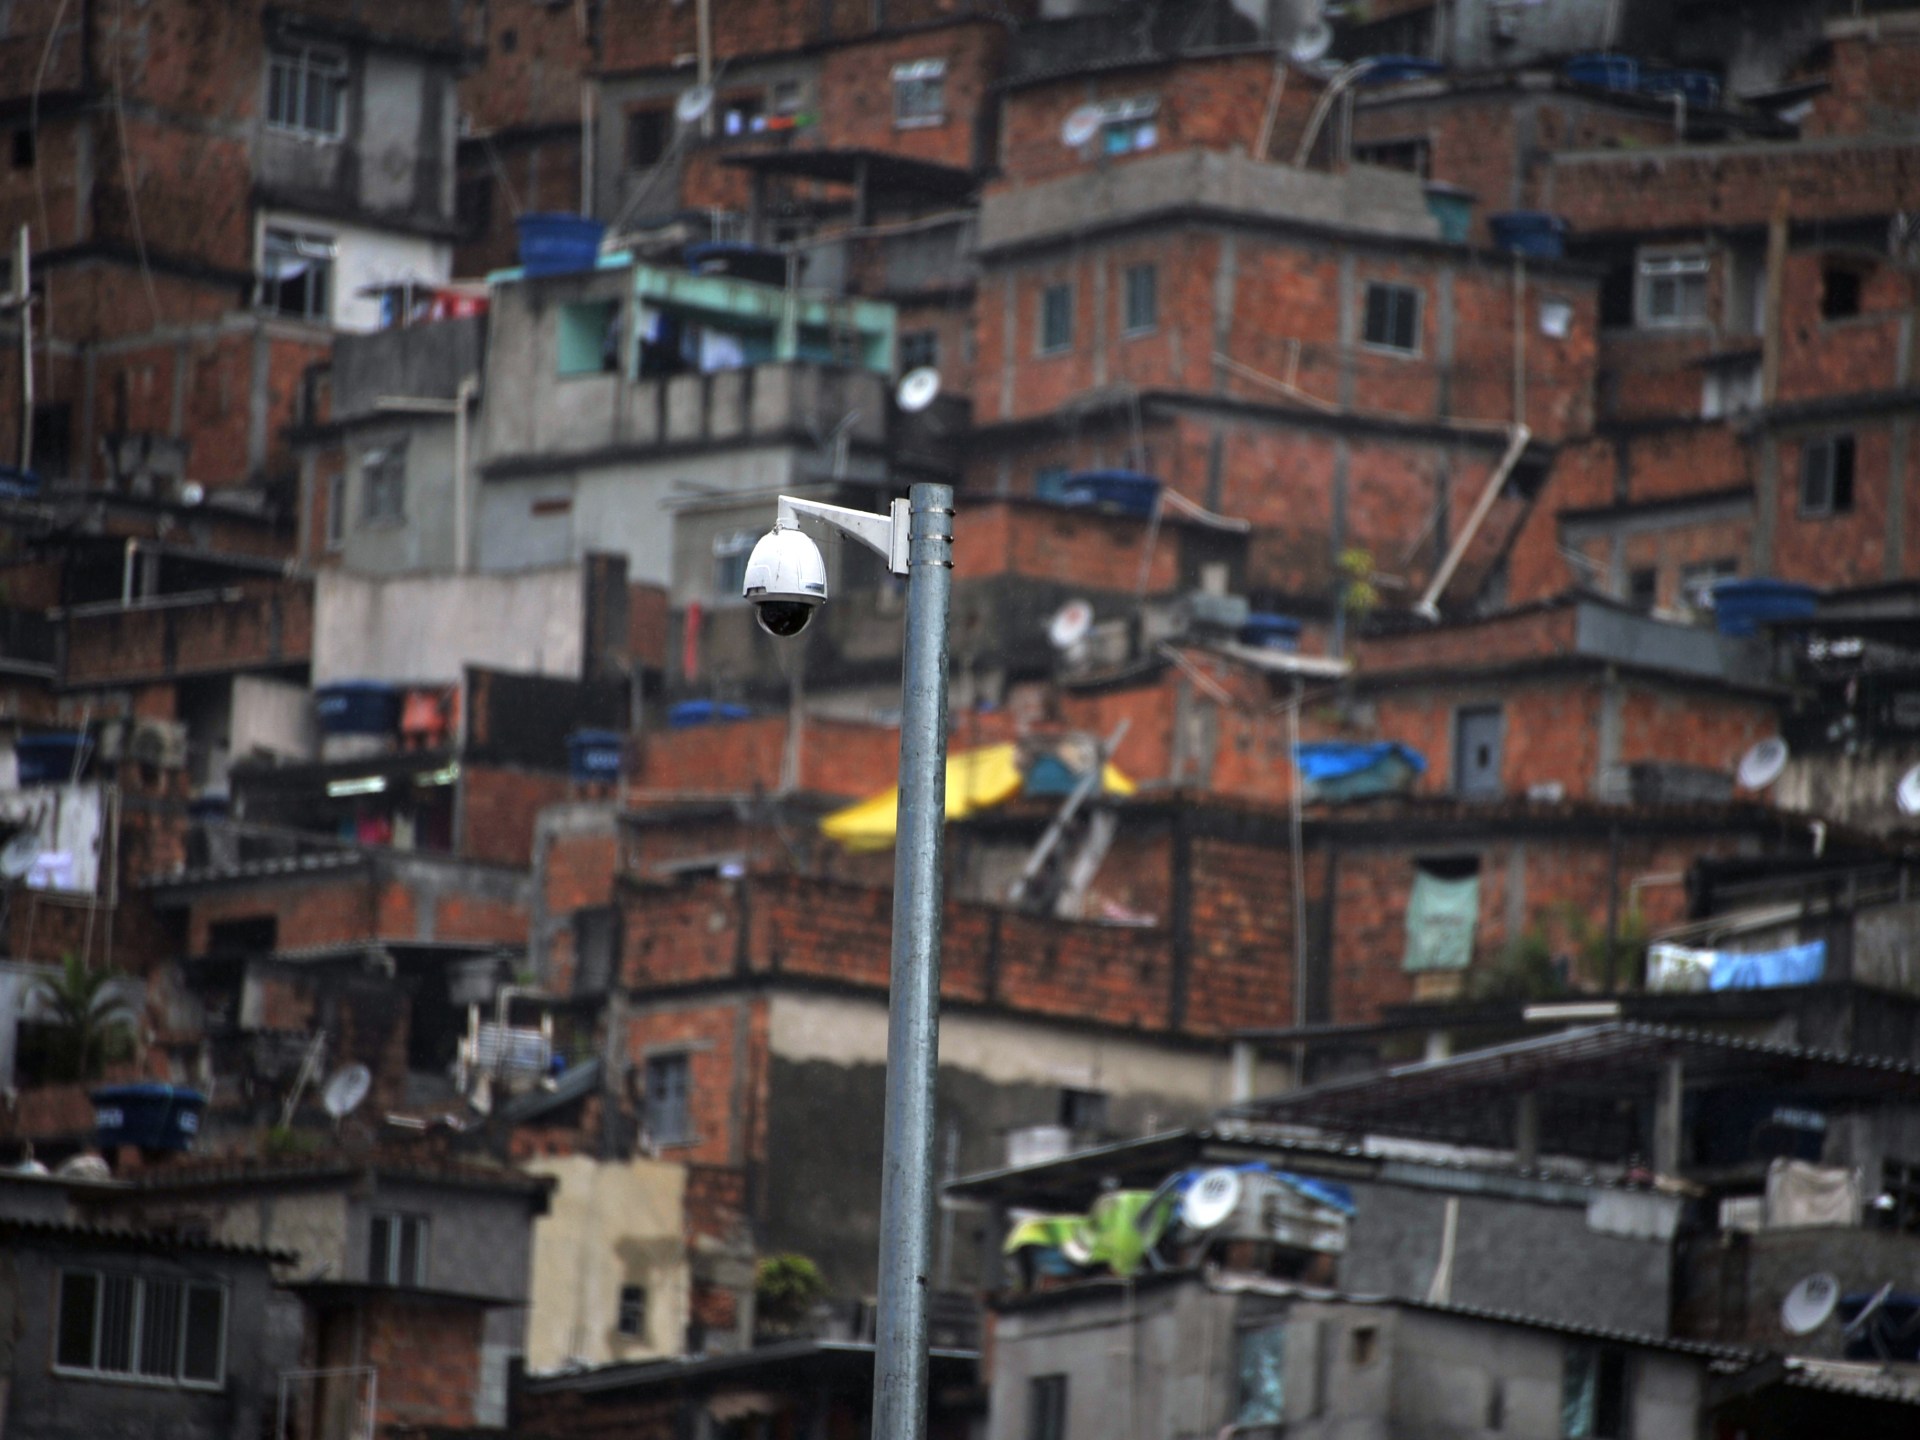 Vigilância por reconhecimento facial em São Paulo pode agravar racismo |  Negócios e notícias de negócios